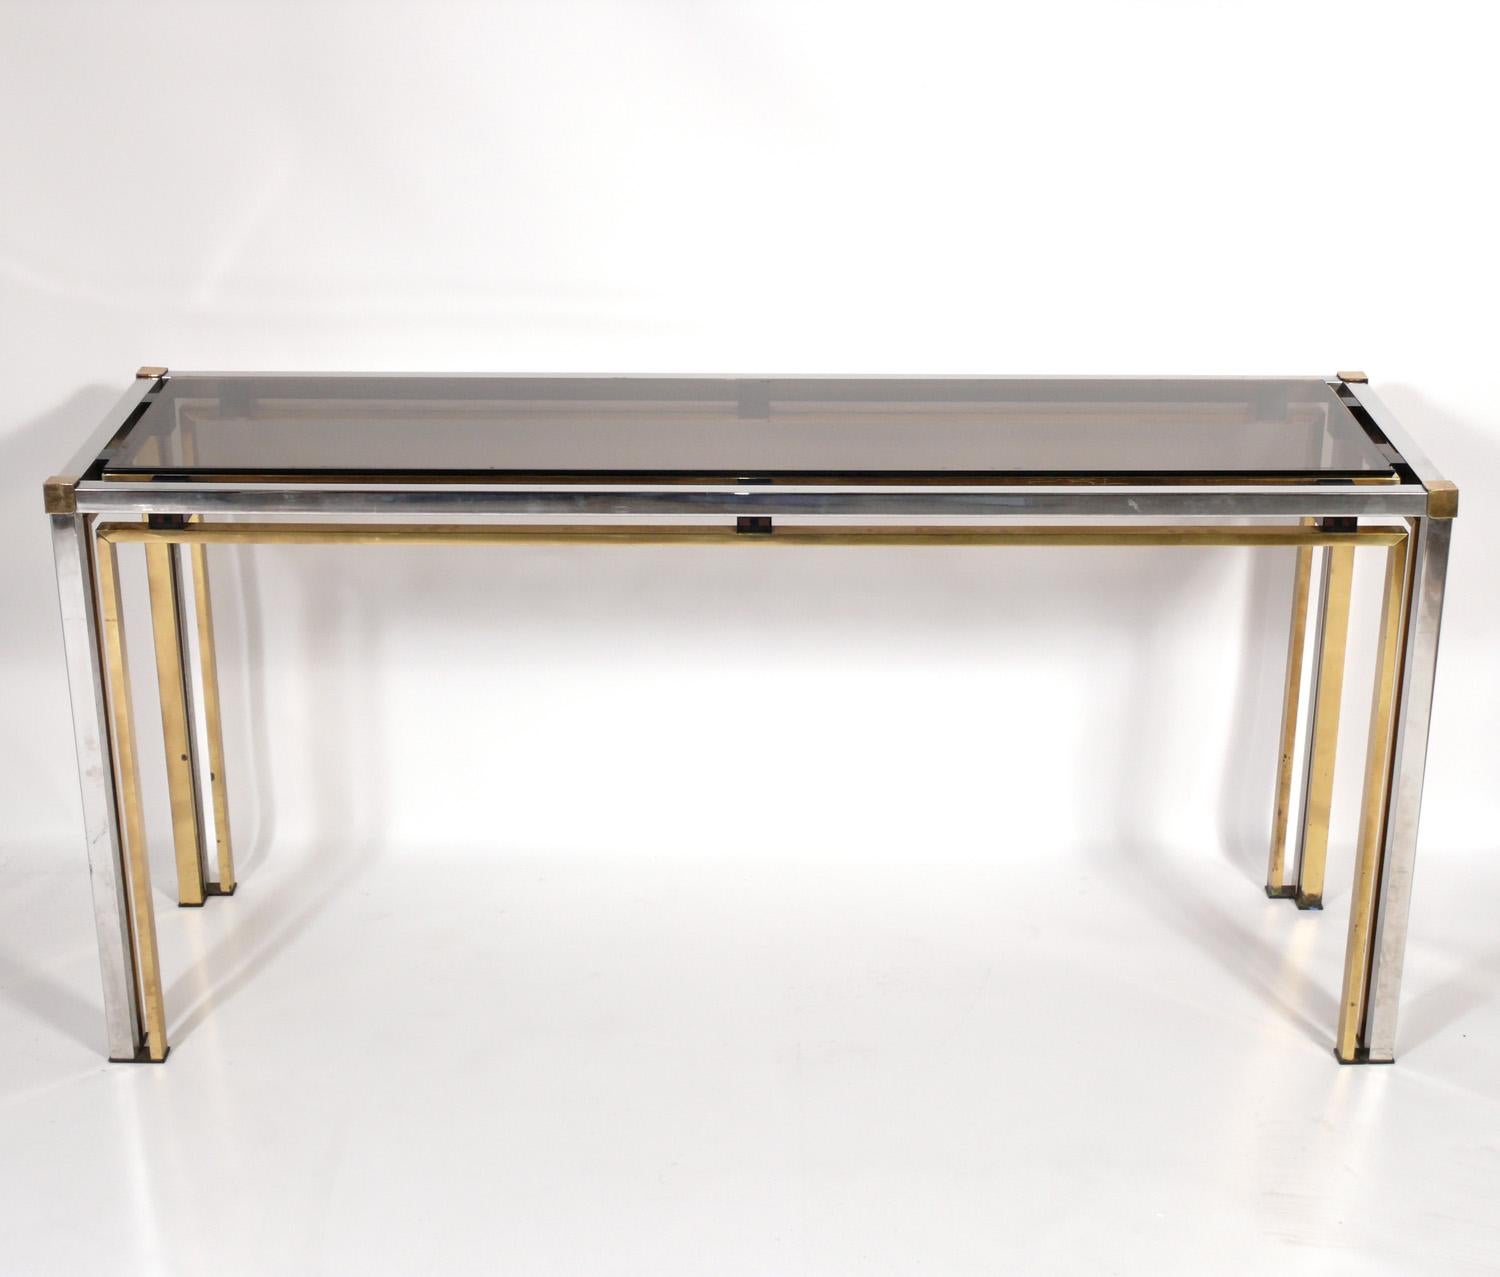 Clean Lined Modern Italian Brass and Chrome Console or sofa table, in the manner or Romeo Rega, Italy, circa 1970s. Dieser Tisch hat eine vielseitige Größe und kann als Konsolentisch, Sofatisch, Schreibtisch oder Waschtisch verwendet werden.